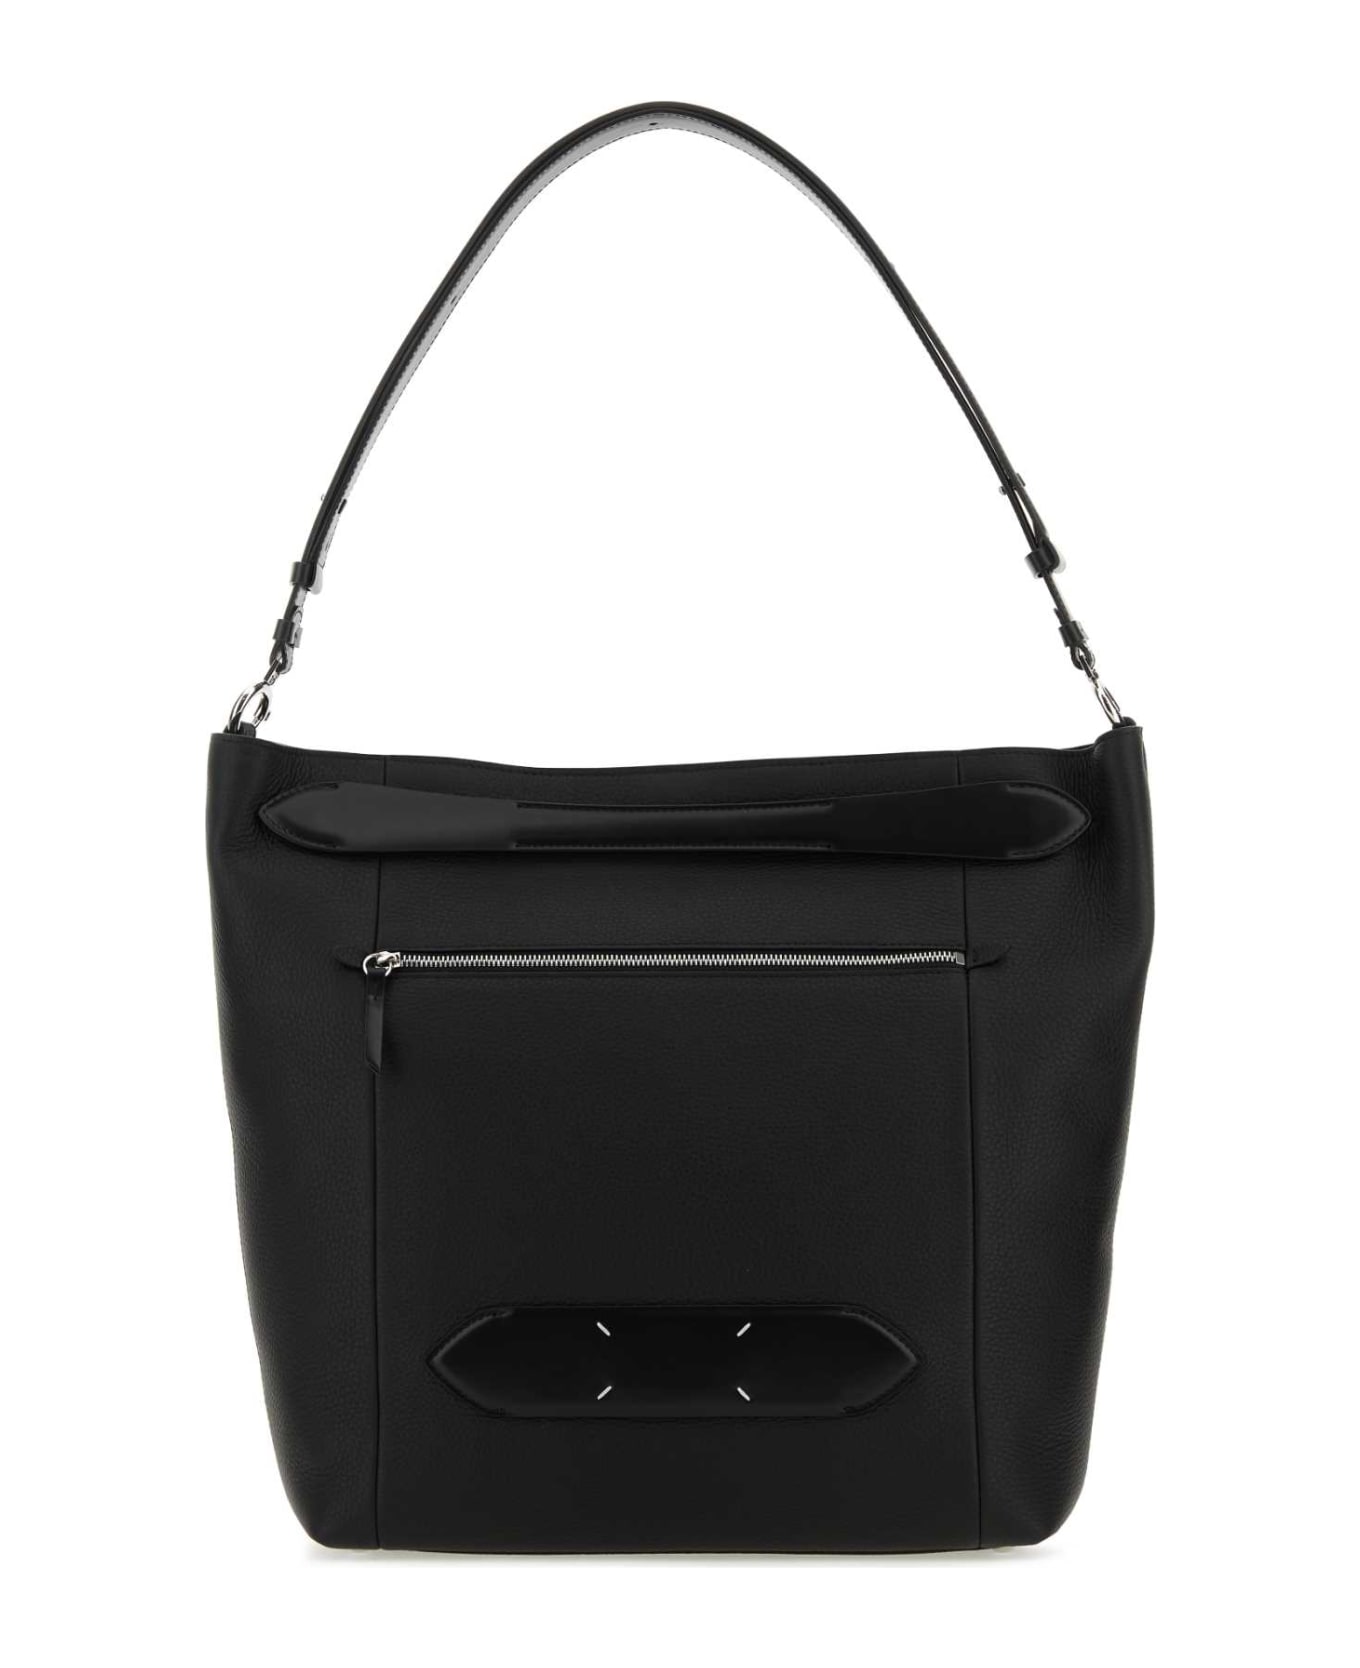 Maison Margiela Black Leather Soft 5ac Shopping Bag - BLACK